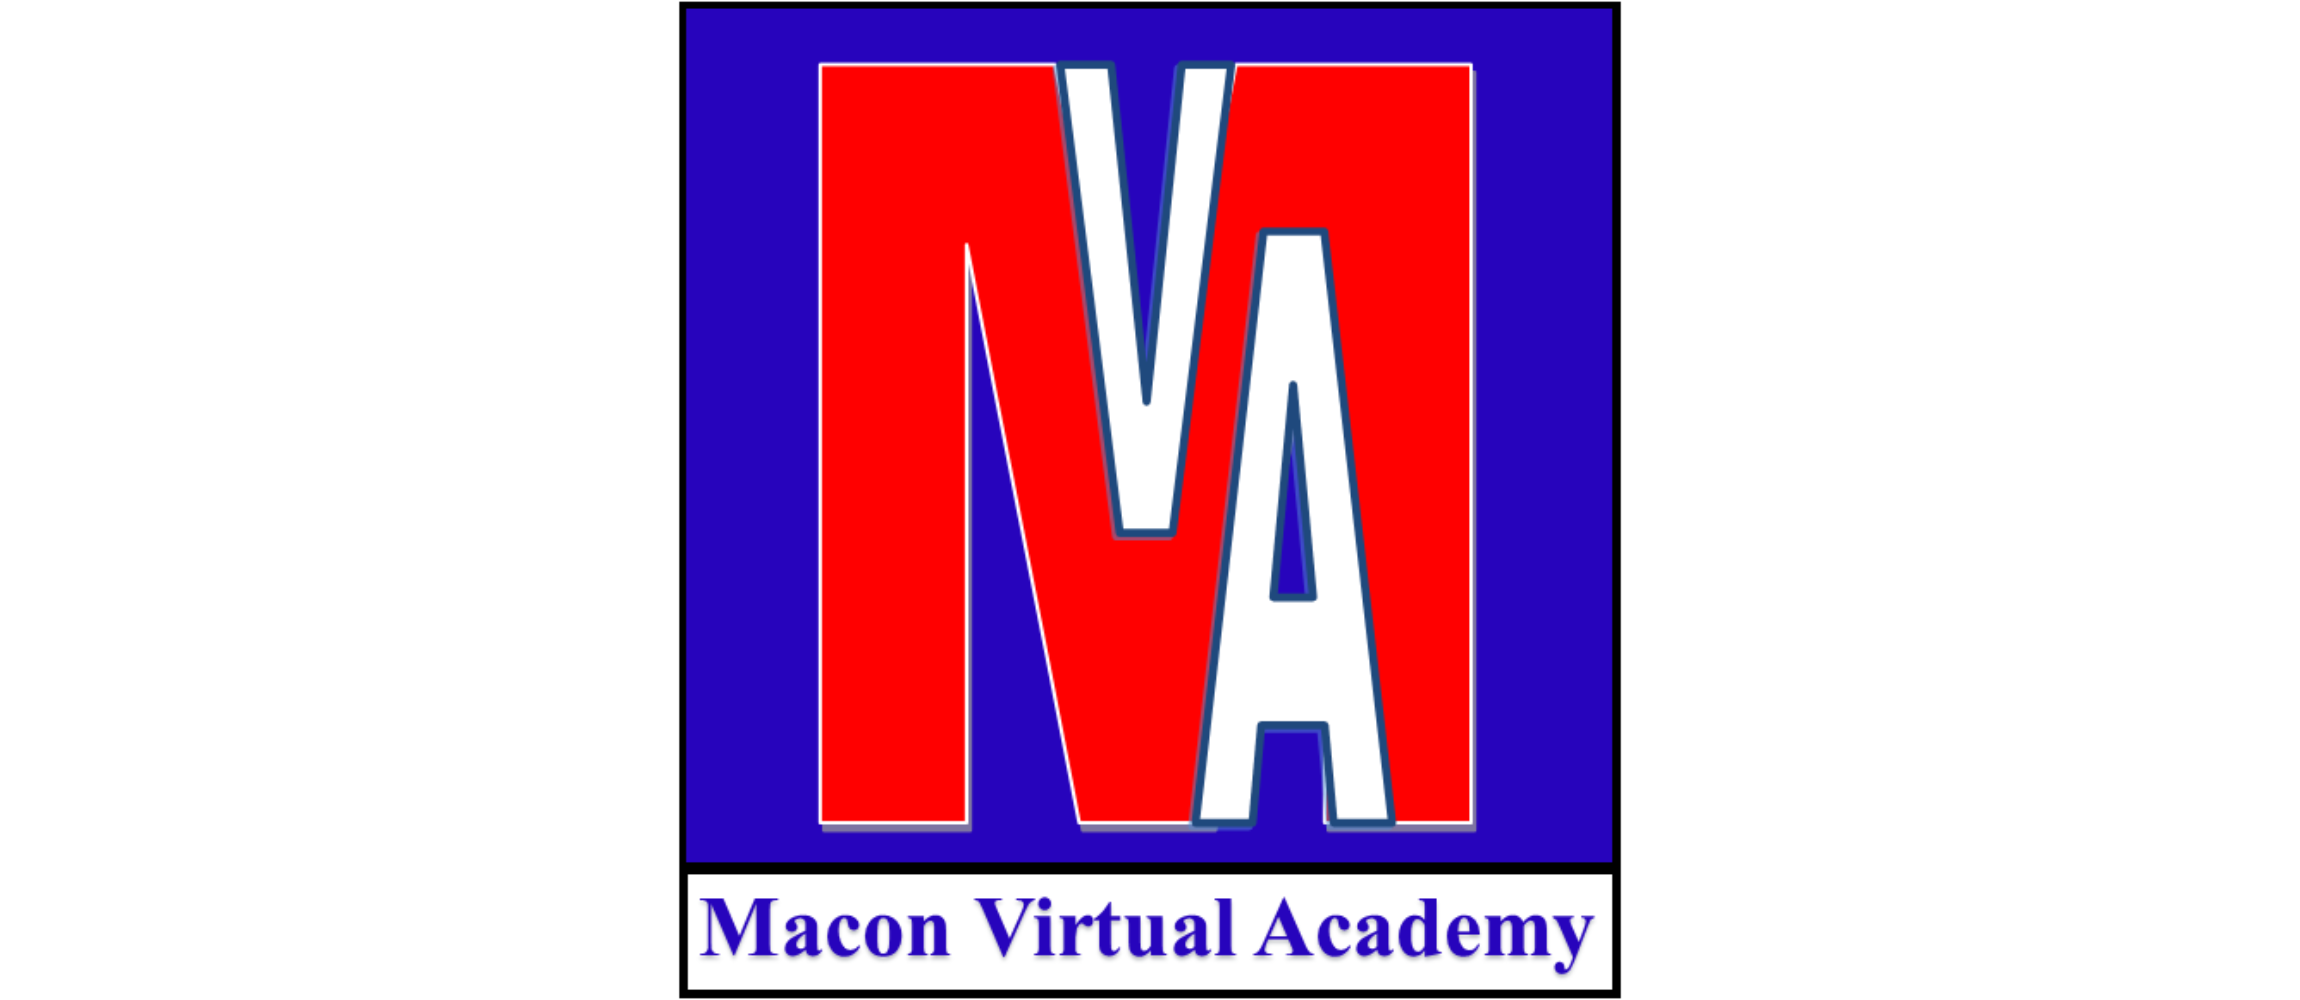 Macon Virtual Academy